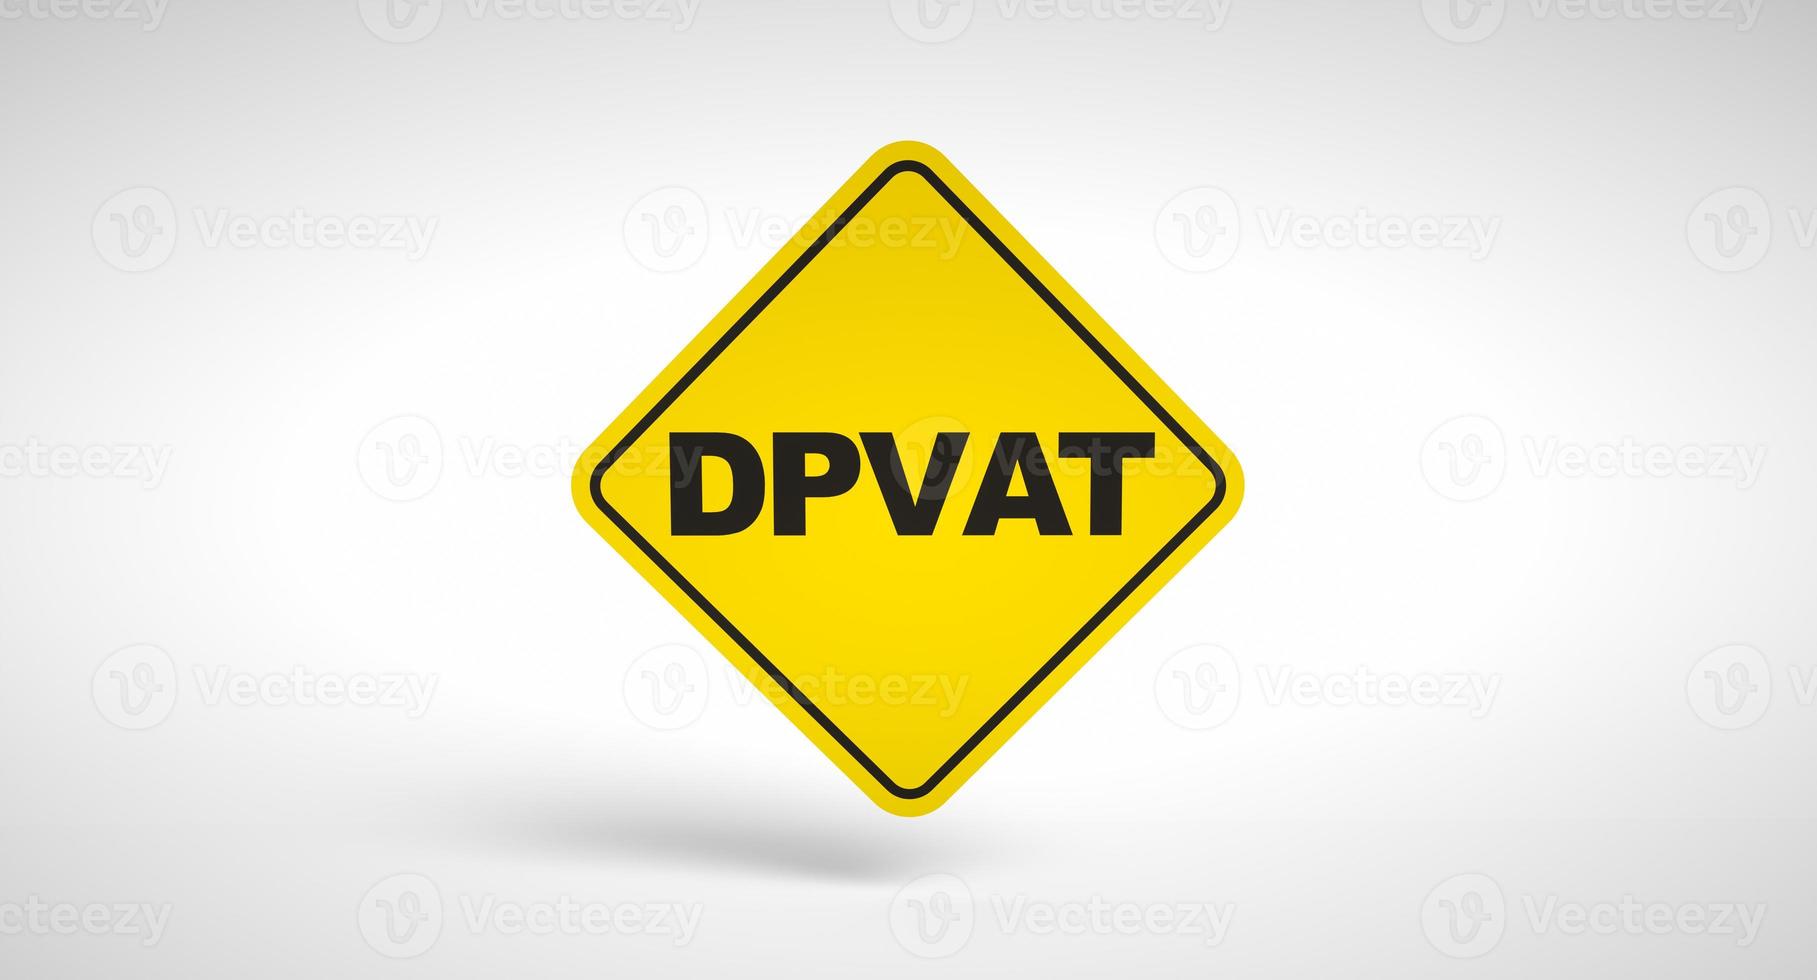 dpvat, imposto de seguro obrigatório para motoristas no brasil. logotipo conceitual dpvat escrito dentro de um sinal de trânsito em fundo branco. foto